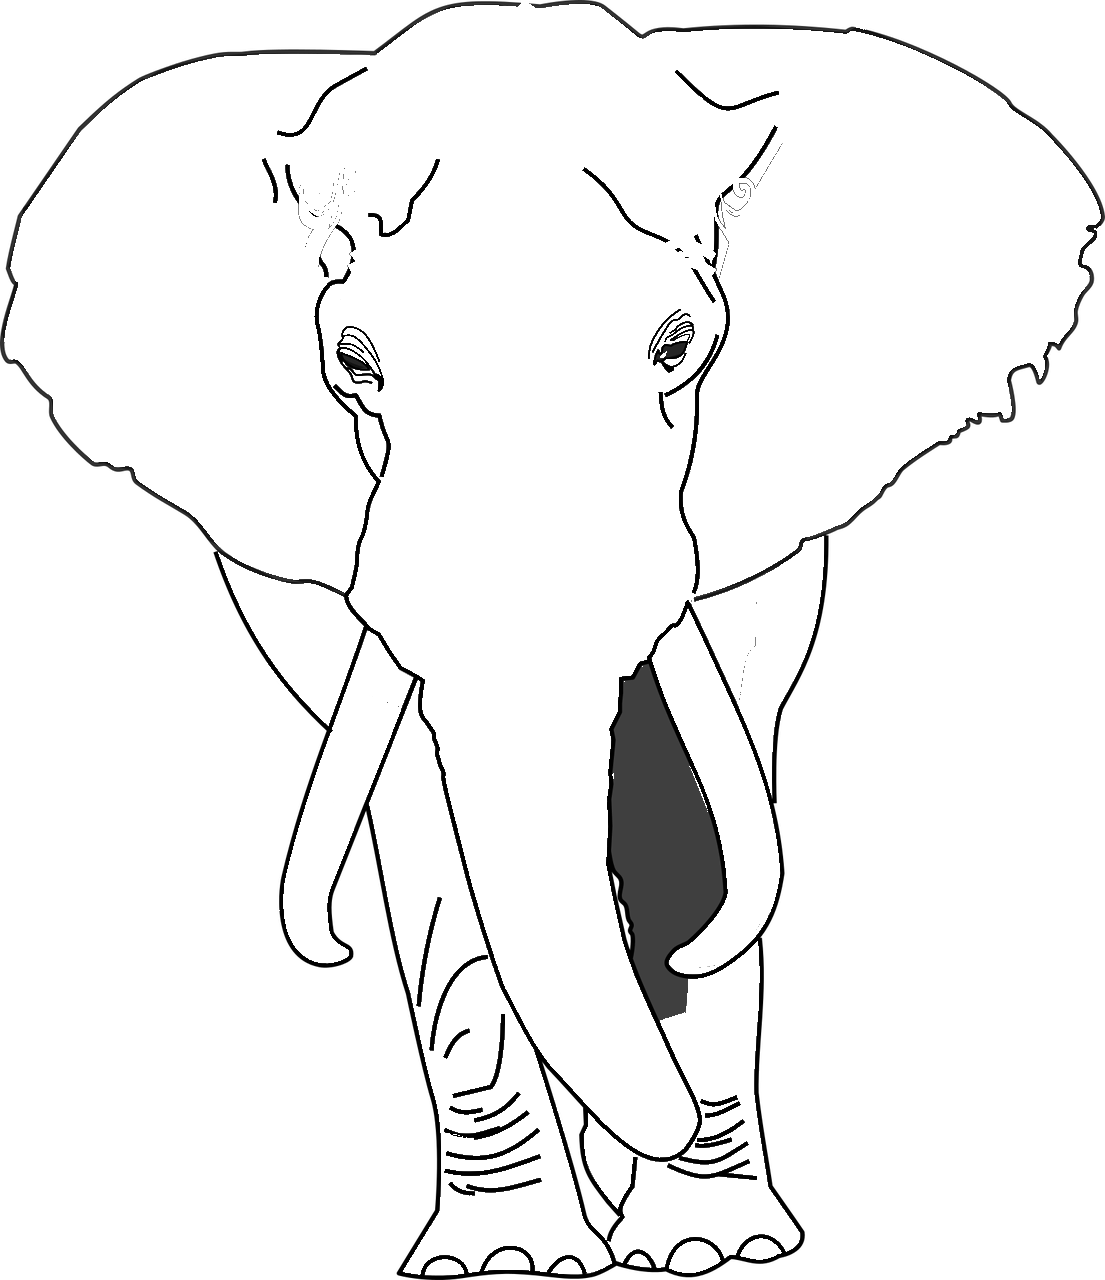 Disegno da colorare di elefante africano realistico frontale